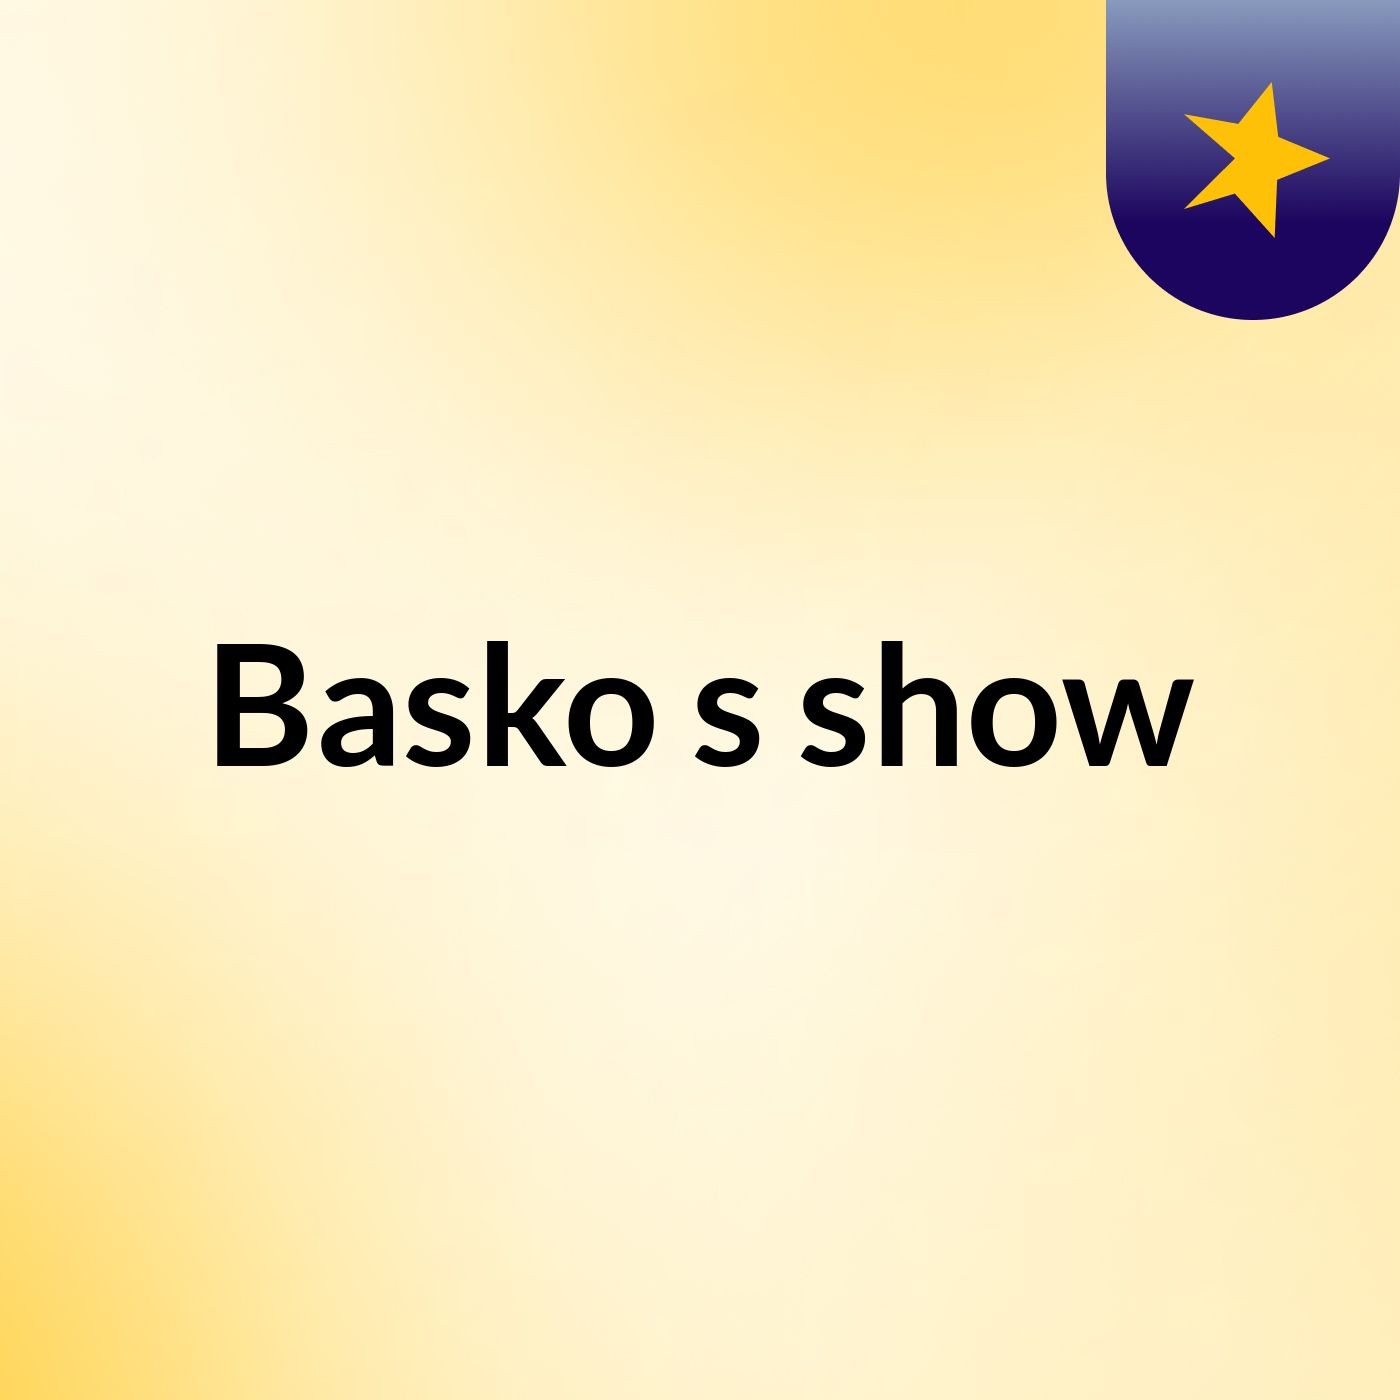 Basko's show